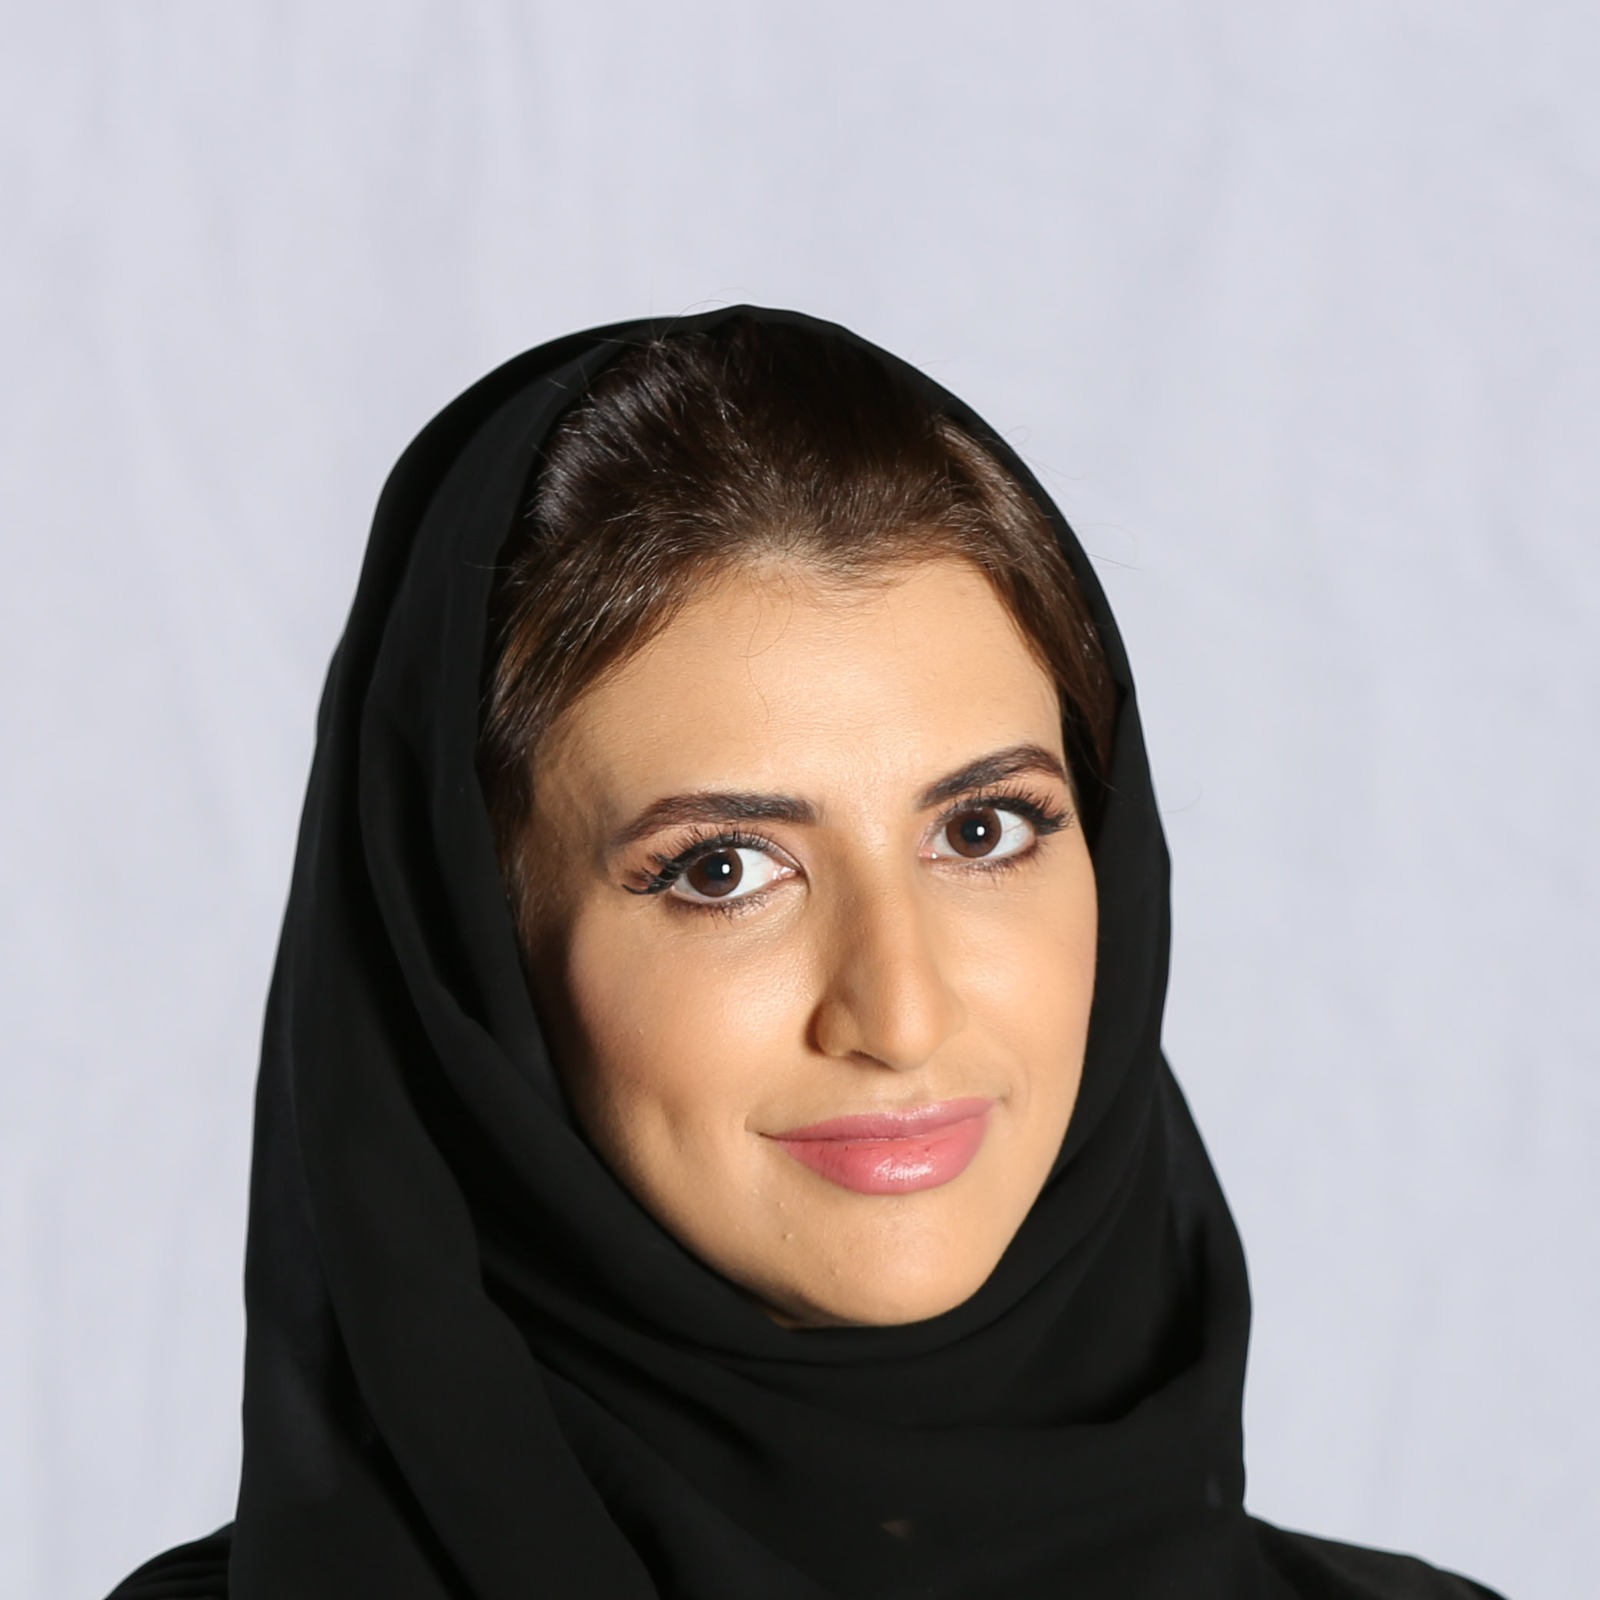 سارة الجرمن:
الدورة البرامجية صممت بحرفية وتعكس هوية «دبي للإعلام» المميزة